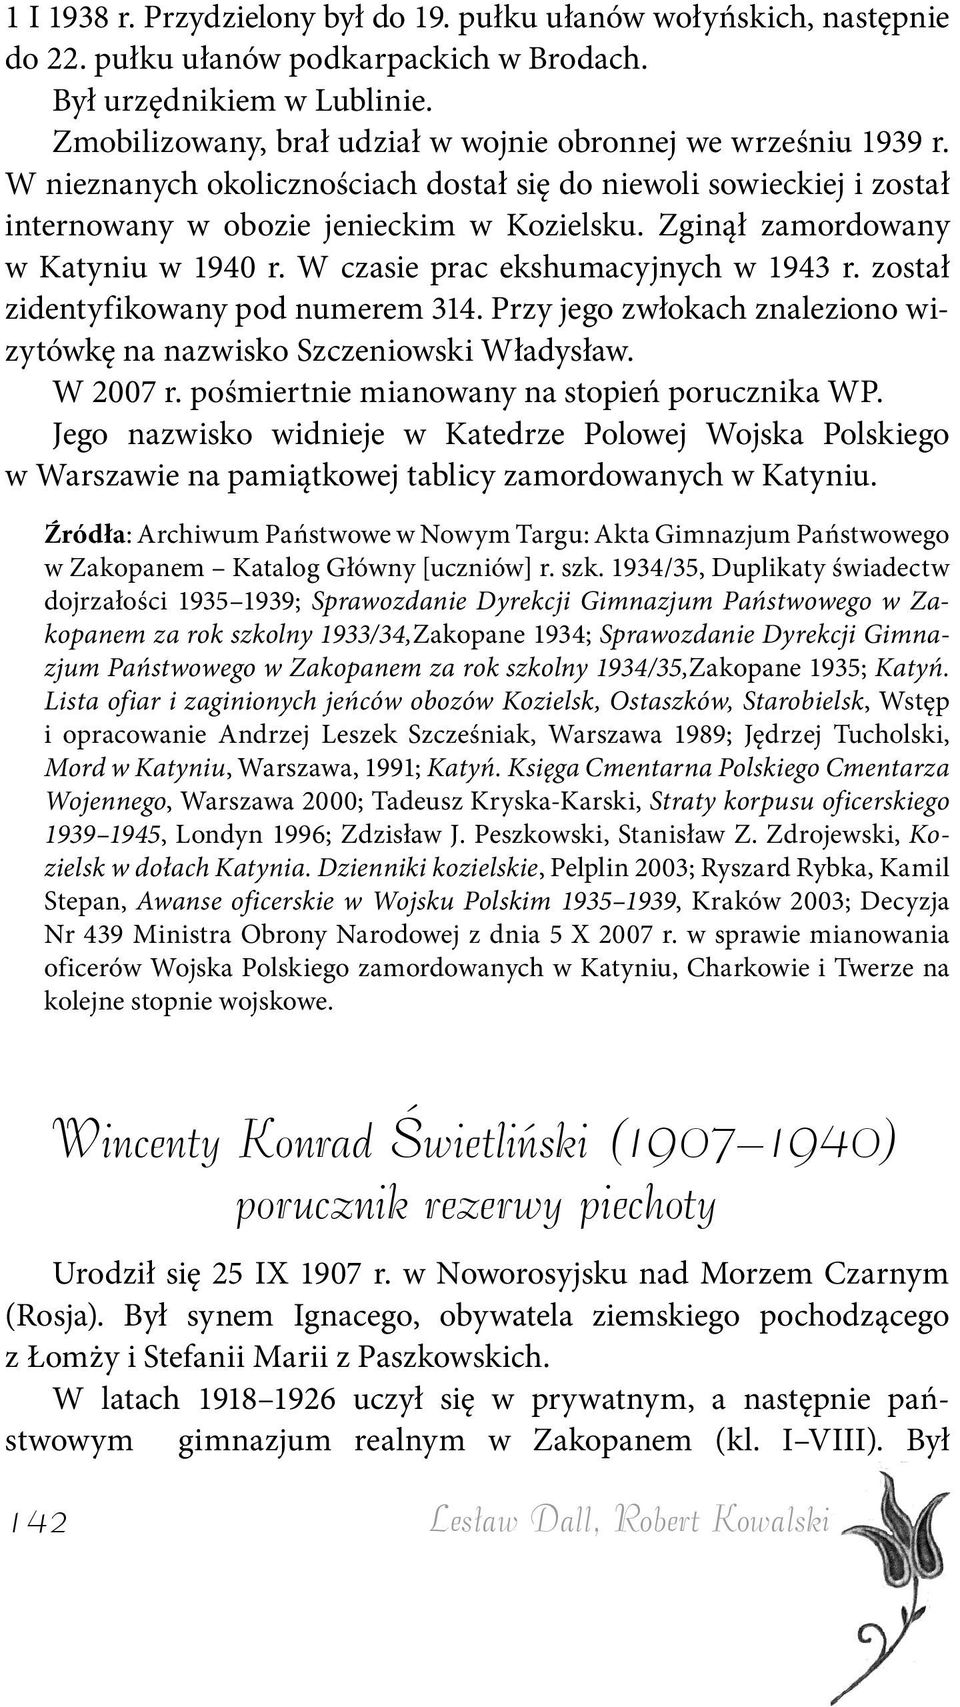 Zginął zamordowany w Katyniu w 1940 r. W czasie prac ekshumacyjnych w 1943 r. został zidentyfikowany pod numerem 314. Przy jego zwłokach znaleziono wizytówkę na nazwisko Szczeniowski Władysław.